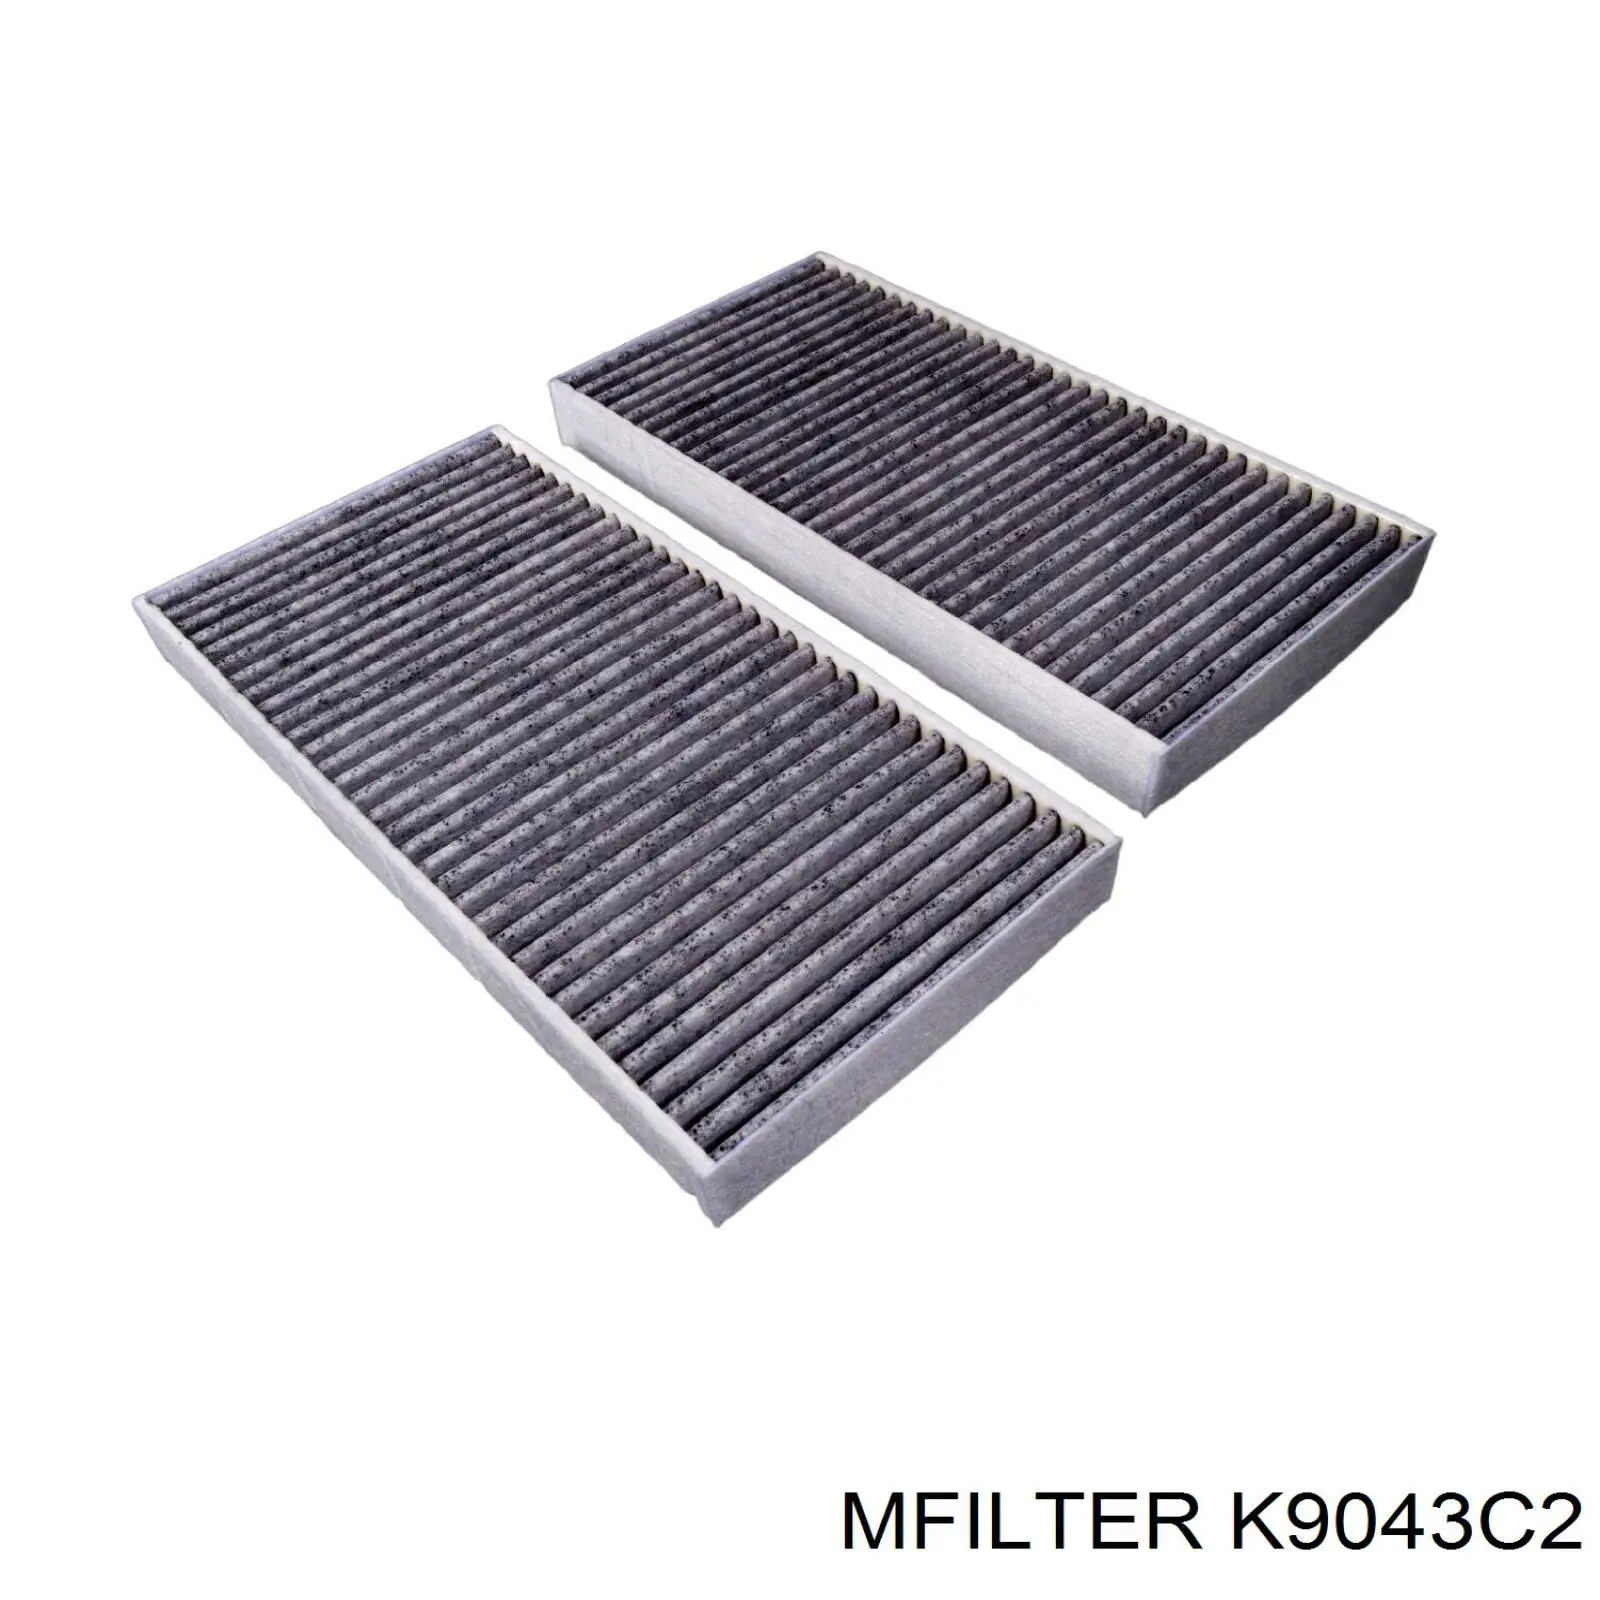 K9043C2 Mfilter filtro habitáculo